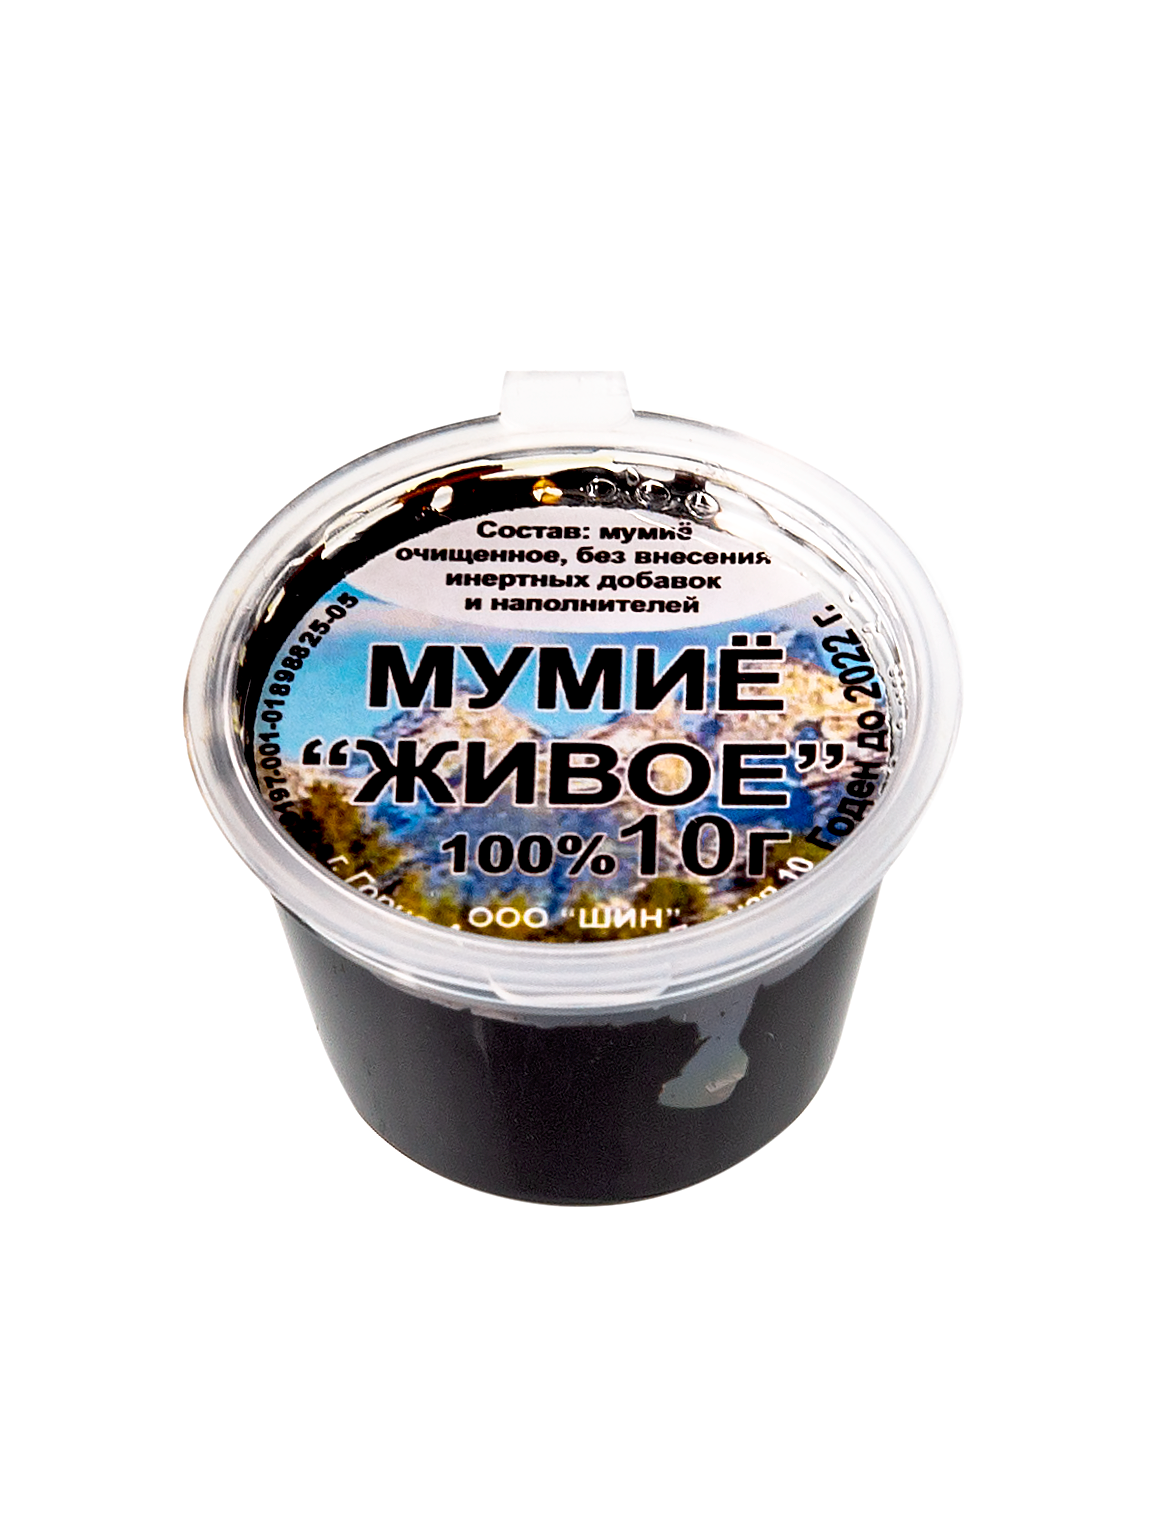 Мумиё Алтайское без добавок в Омске